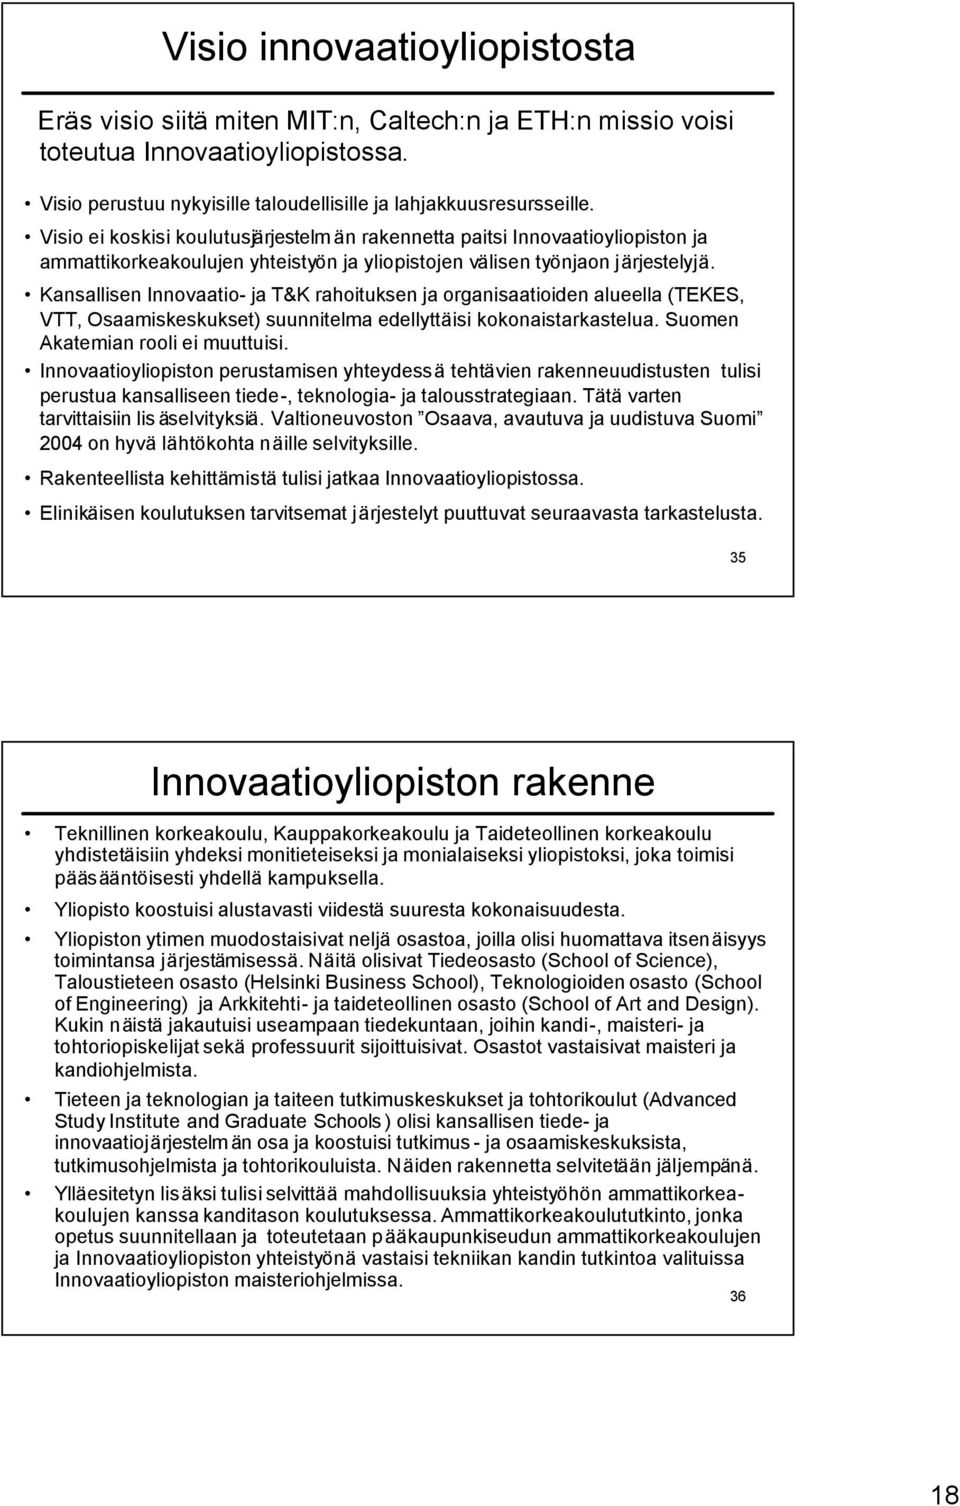 Kansallisen Innovaatio- ja T&K rahoituksen ja organisaatioiden alueella (TEKES, VTT, Osaamiskeskukset) suunnitelma edellyttäisi kokonaistarkastelua. Suomen Akatemian rooli ei muuttuisi.